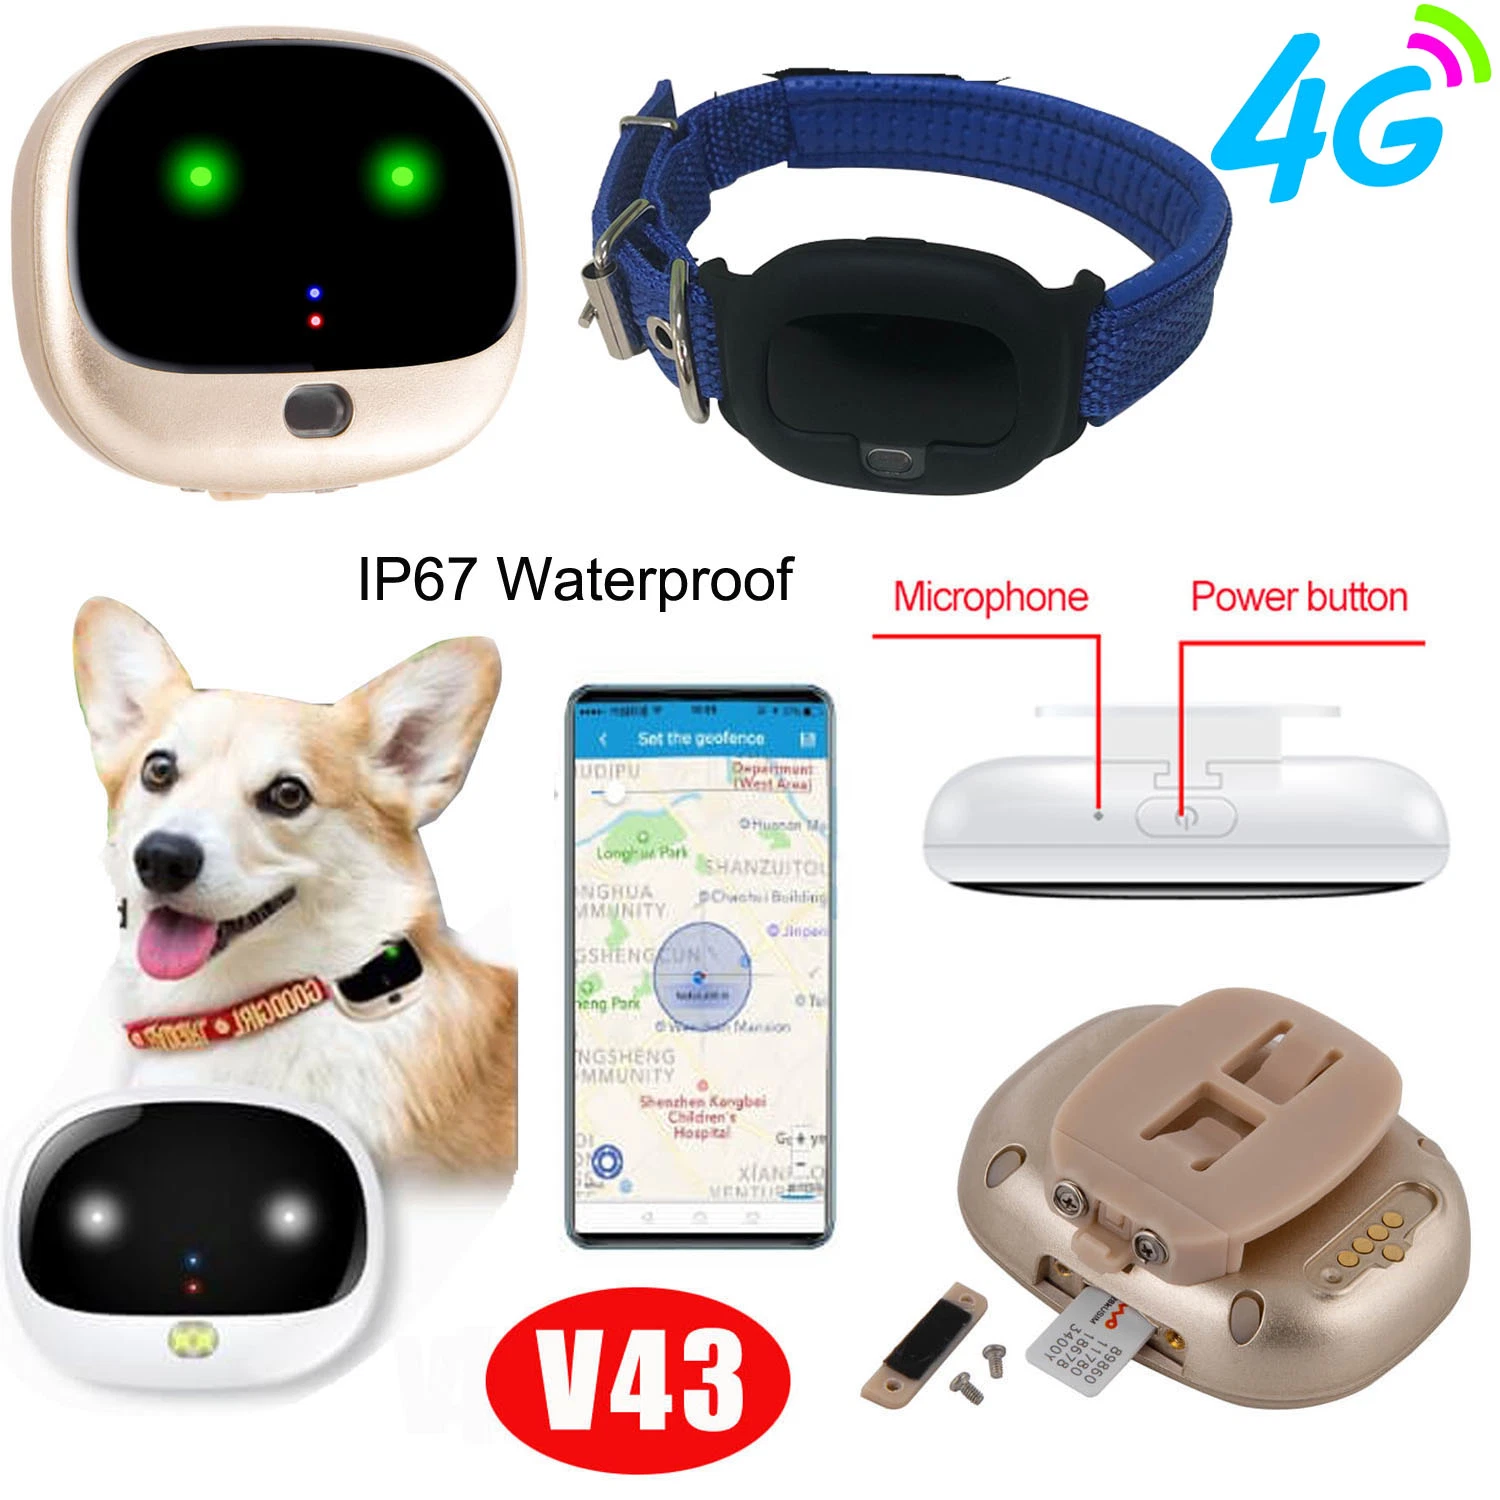 Novo dispositivo de localização GPS 4G LTE para animais de estimação com proteção à prova de água IP67 Para monitorização de segurança dos cães V43